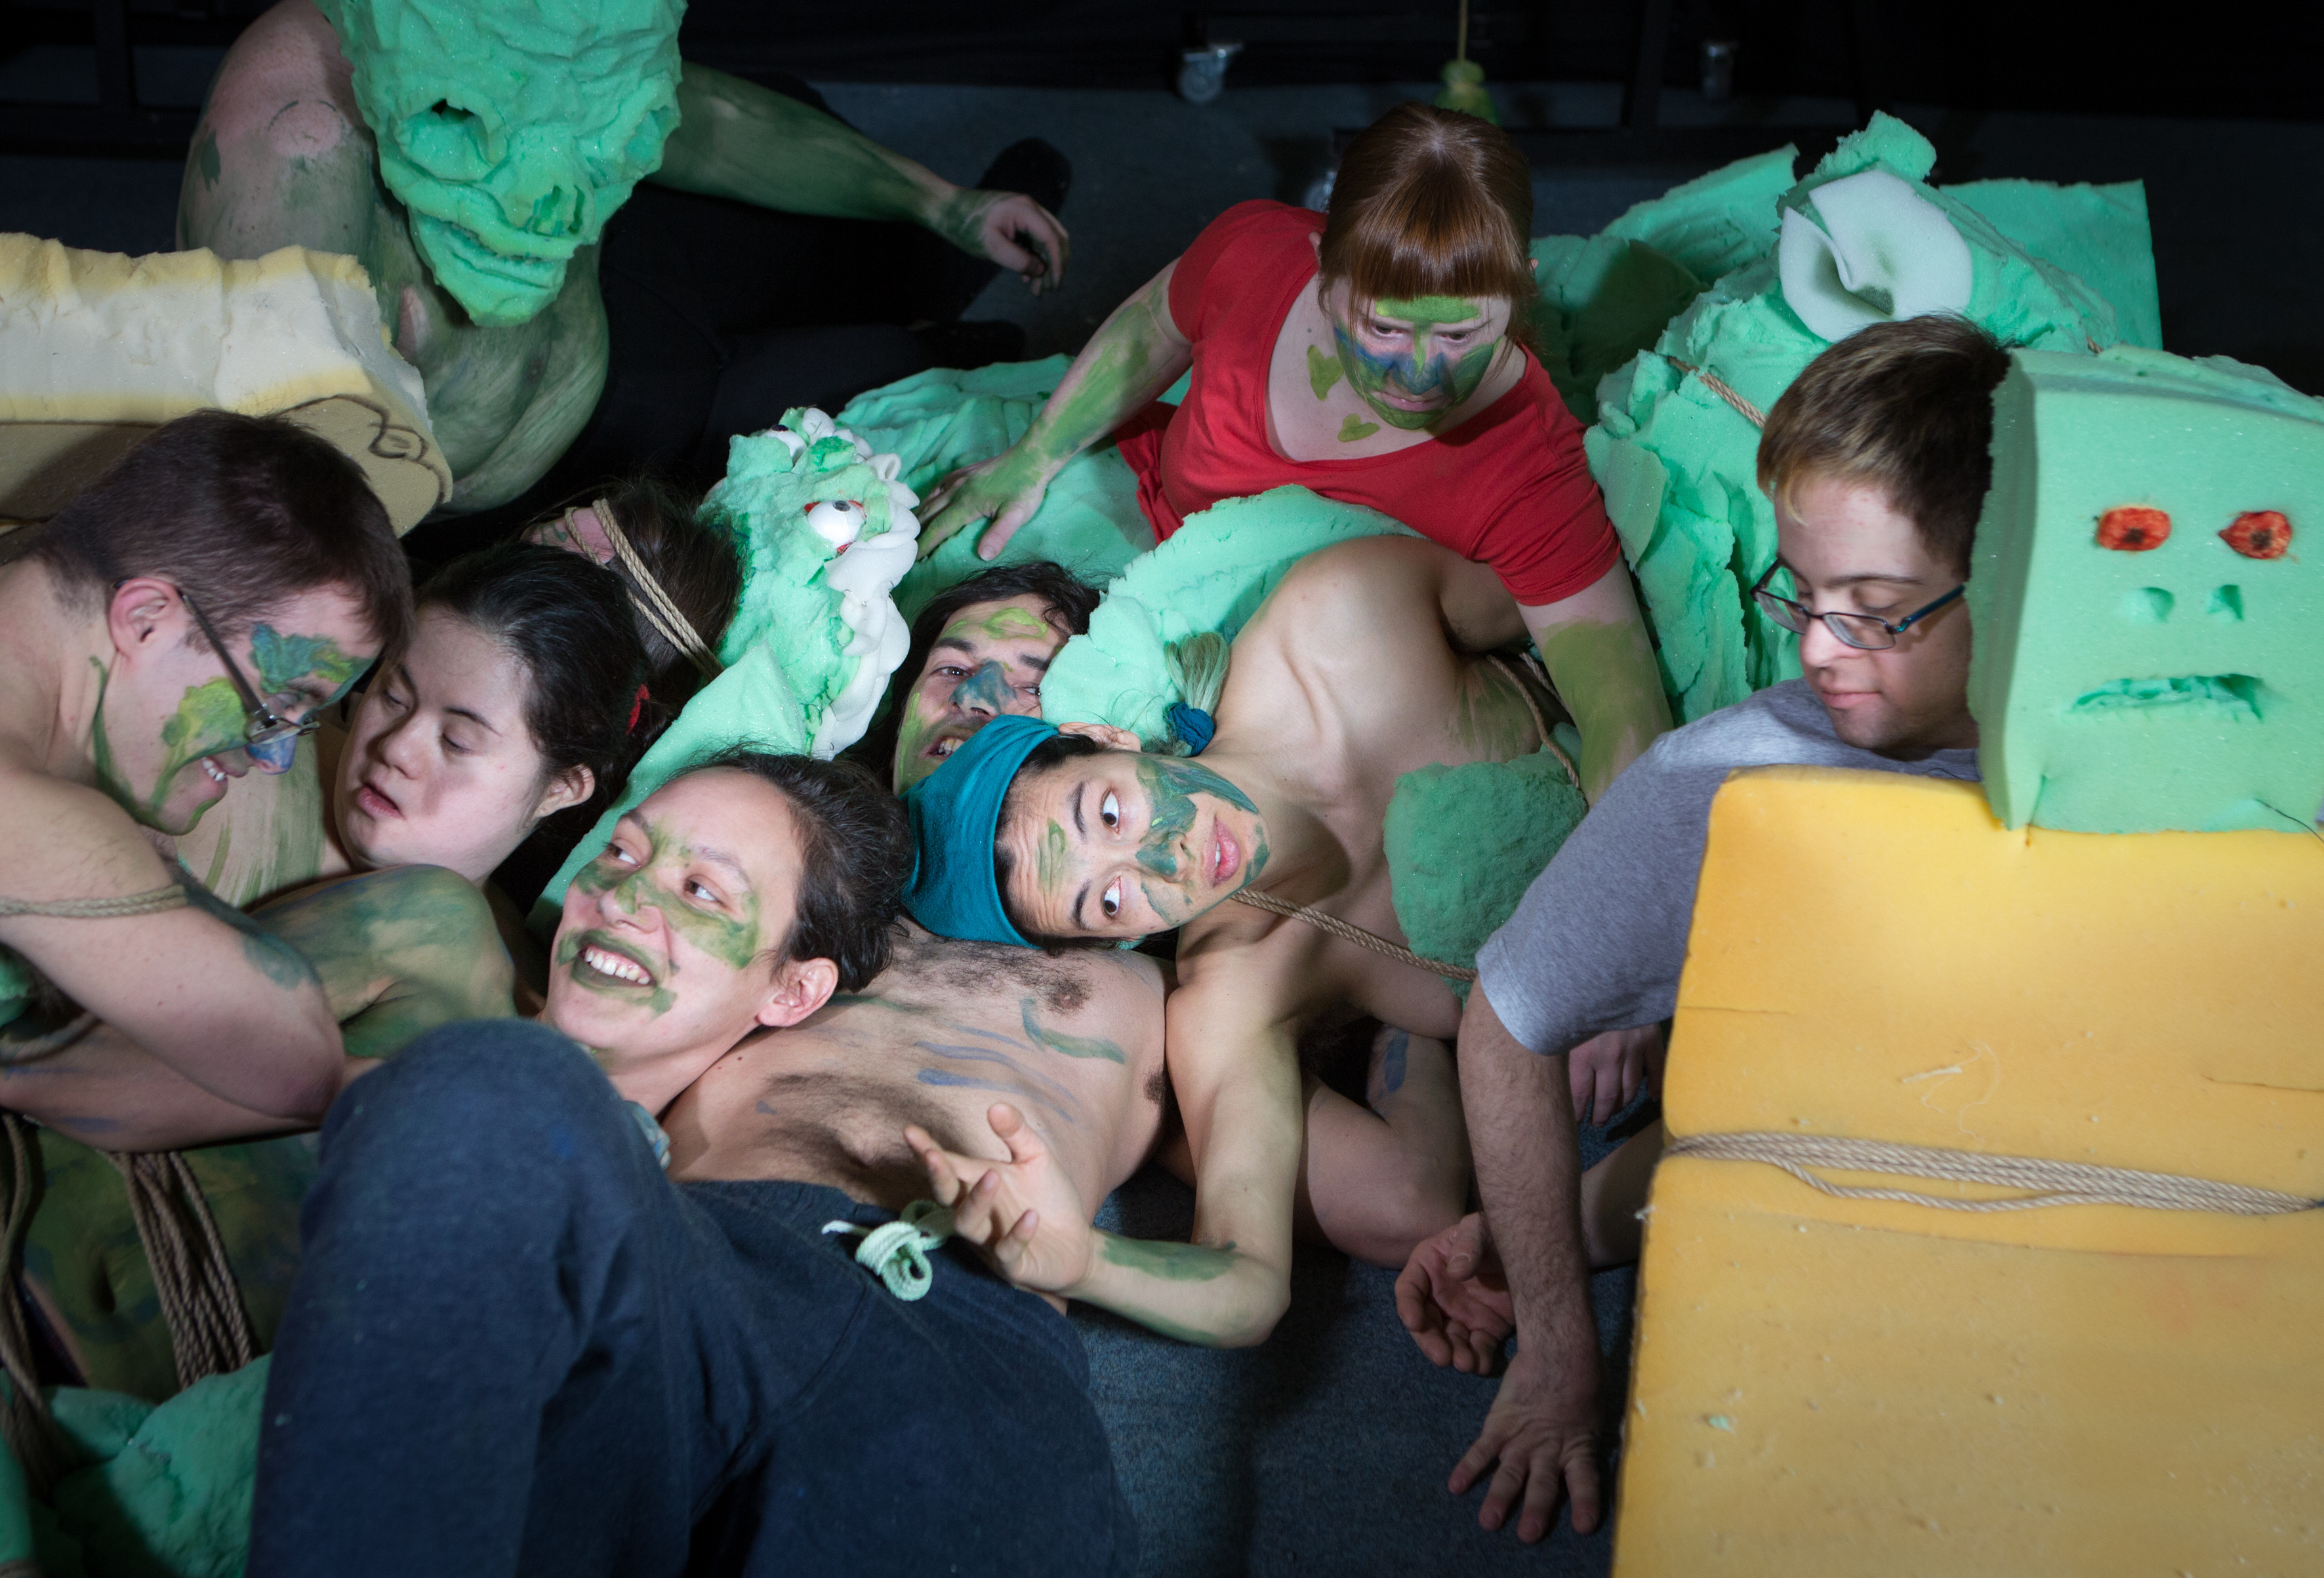 Sieben Menschen liegen in einer Gruppe, sie haben die Gesichter teilweise grün angemalt, auf dem Boden liegt grüner Schaumstoff